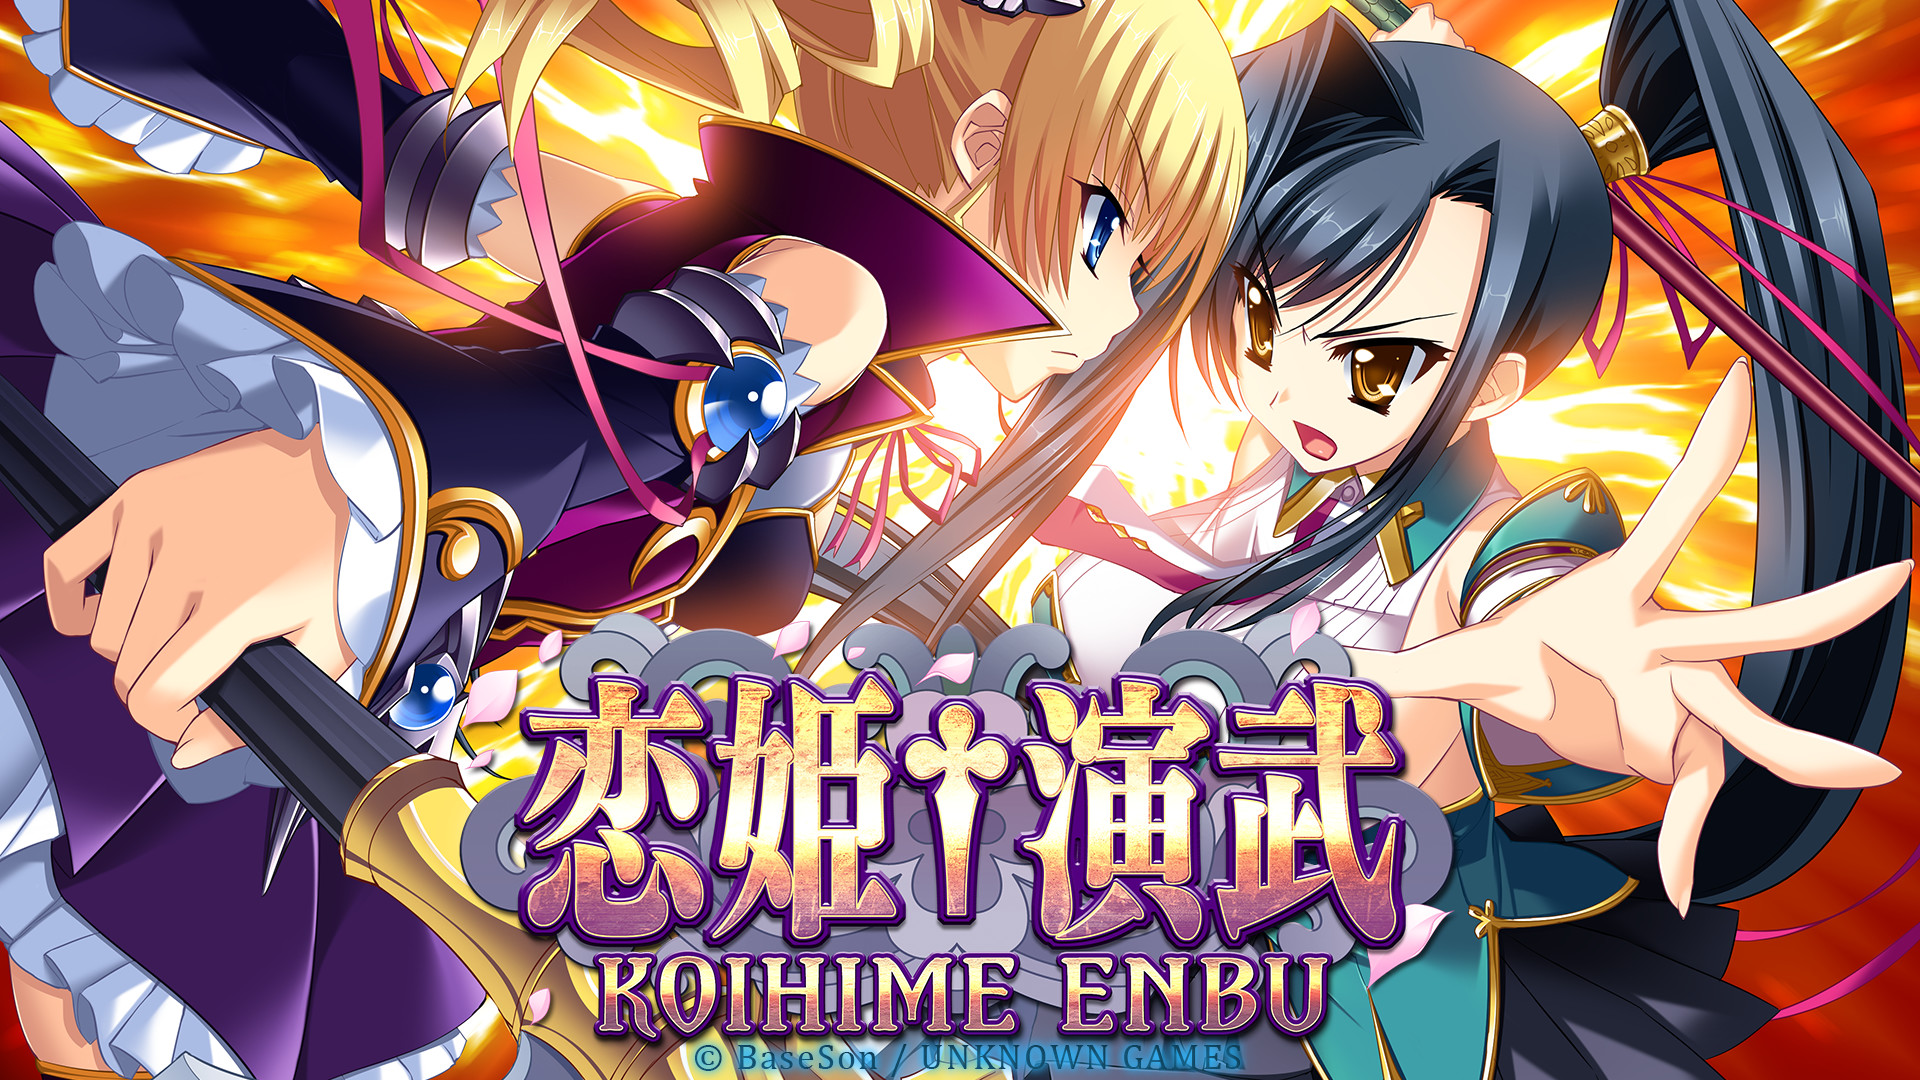 Koihime Enbu Original Sound Track On Steam